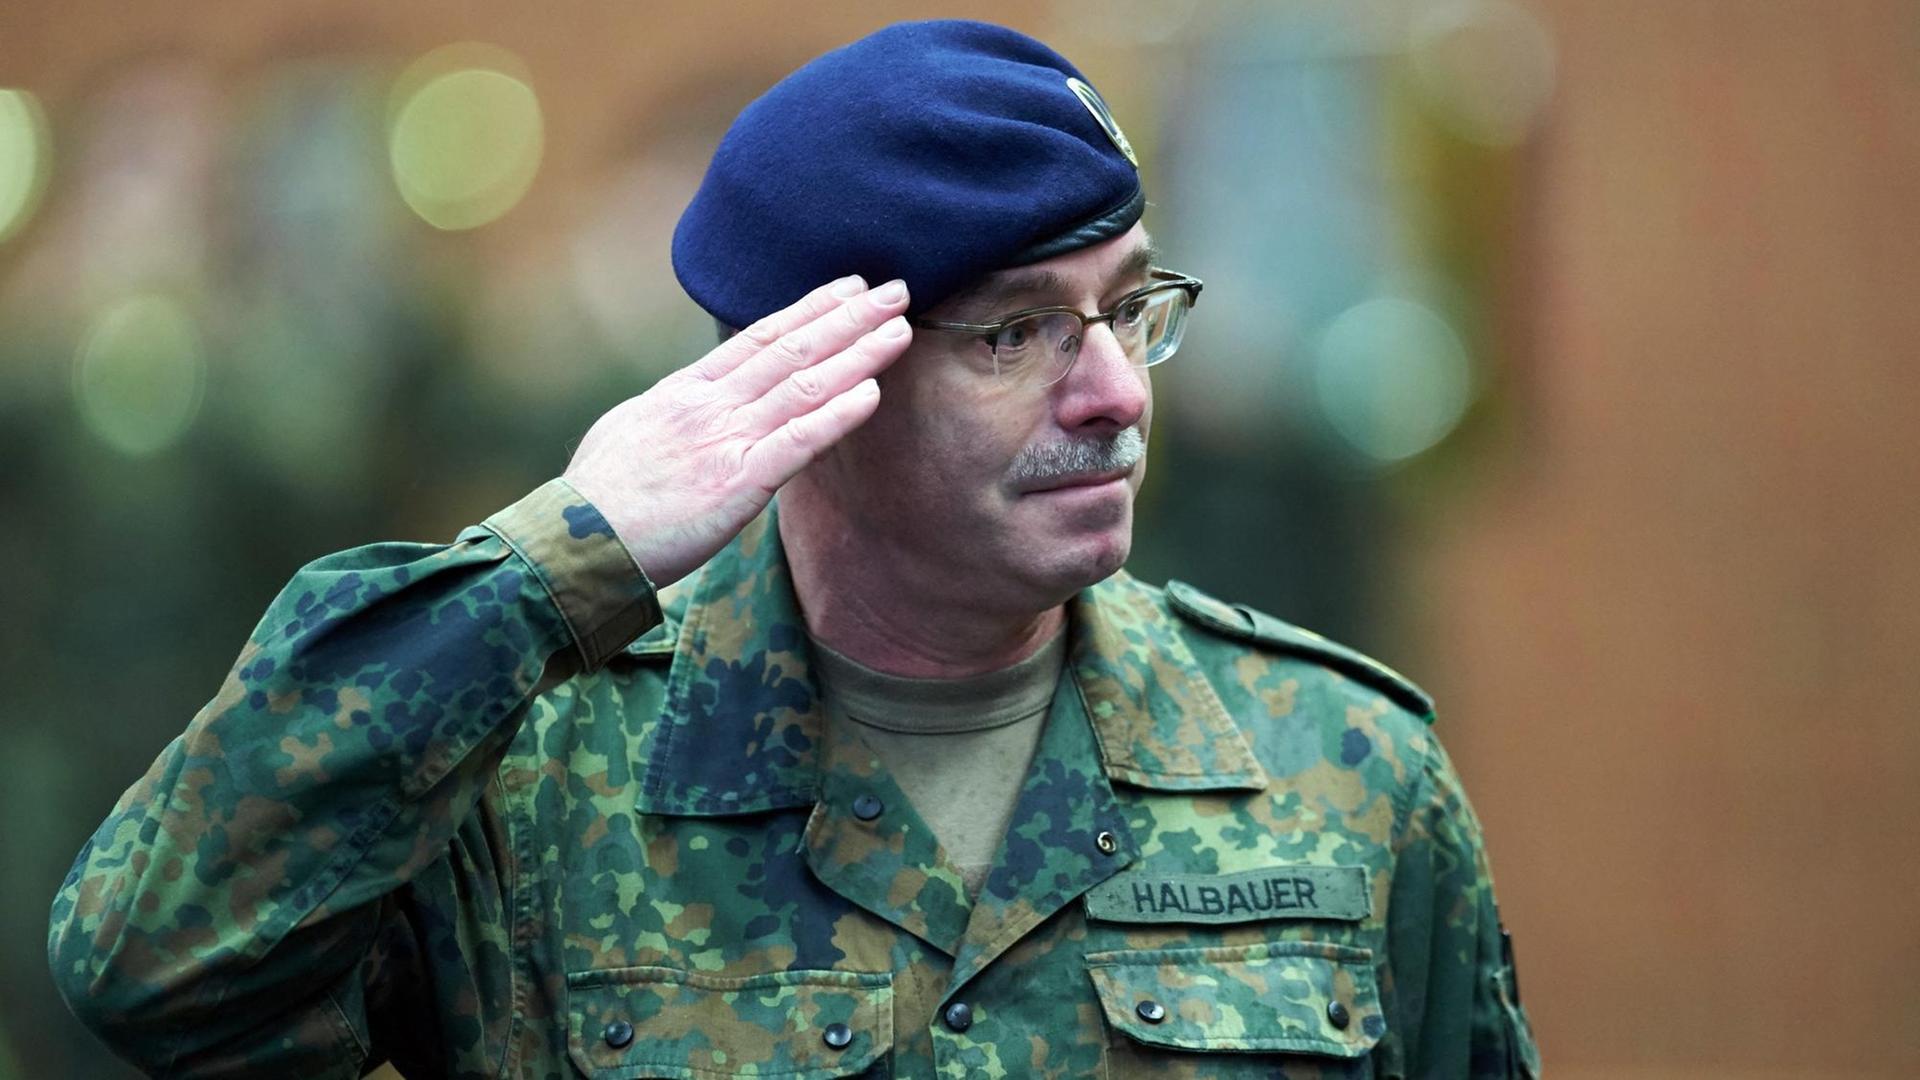 Der deutsche Kommandant Lieutenant General Volker Halbauer des I. Deutsch-Niederländische Korps salutiert in Münster bei der Übergabe des Kommandos der schnellen Eingreiftruppe der NATO (NRF)